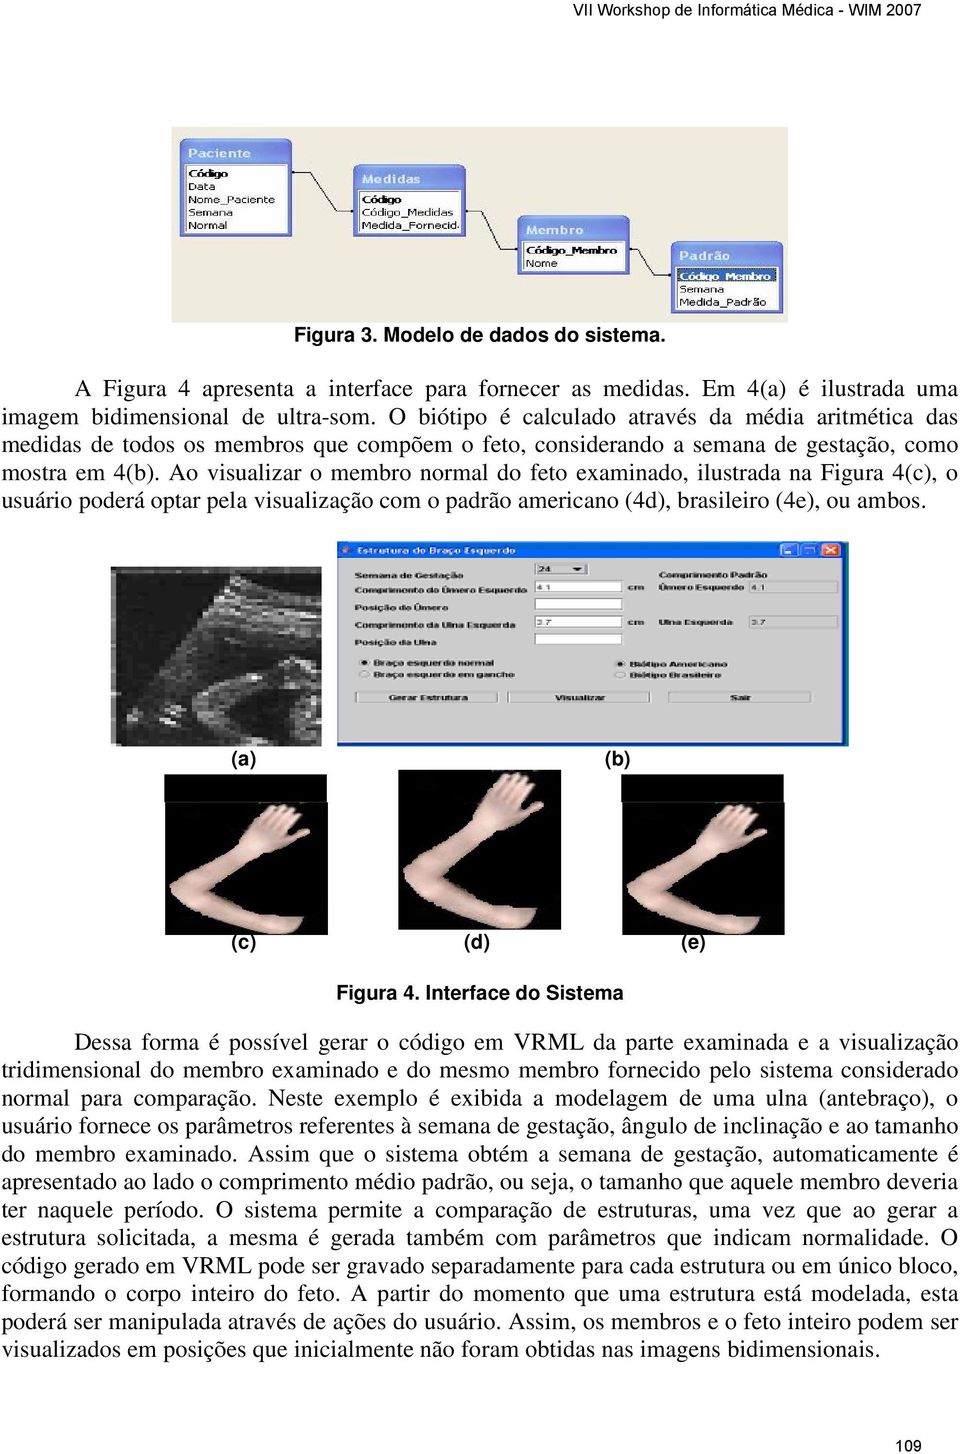 Ao visualizar o membro normal do feto examinado, ilustrada na Figura 4(c), o usuário poderá optar pela visualização com o padrão americano (4d), brasileiro (4e), ou ambos.